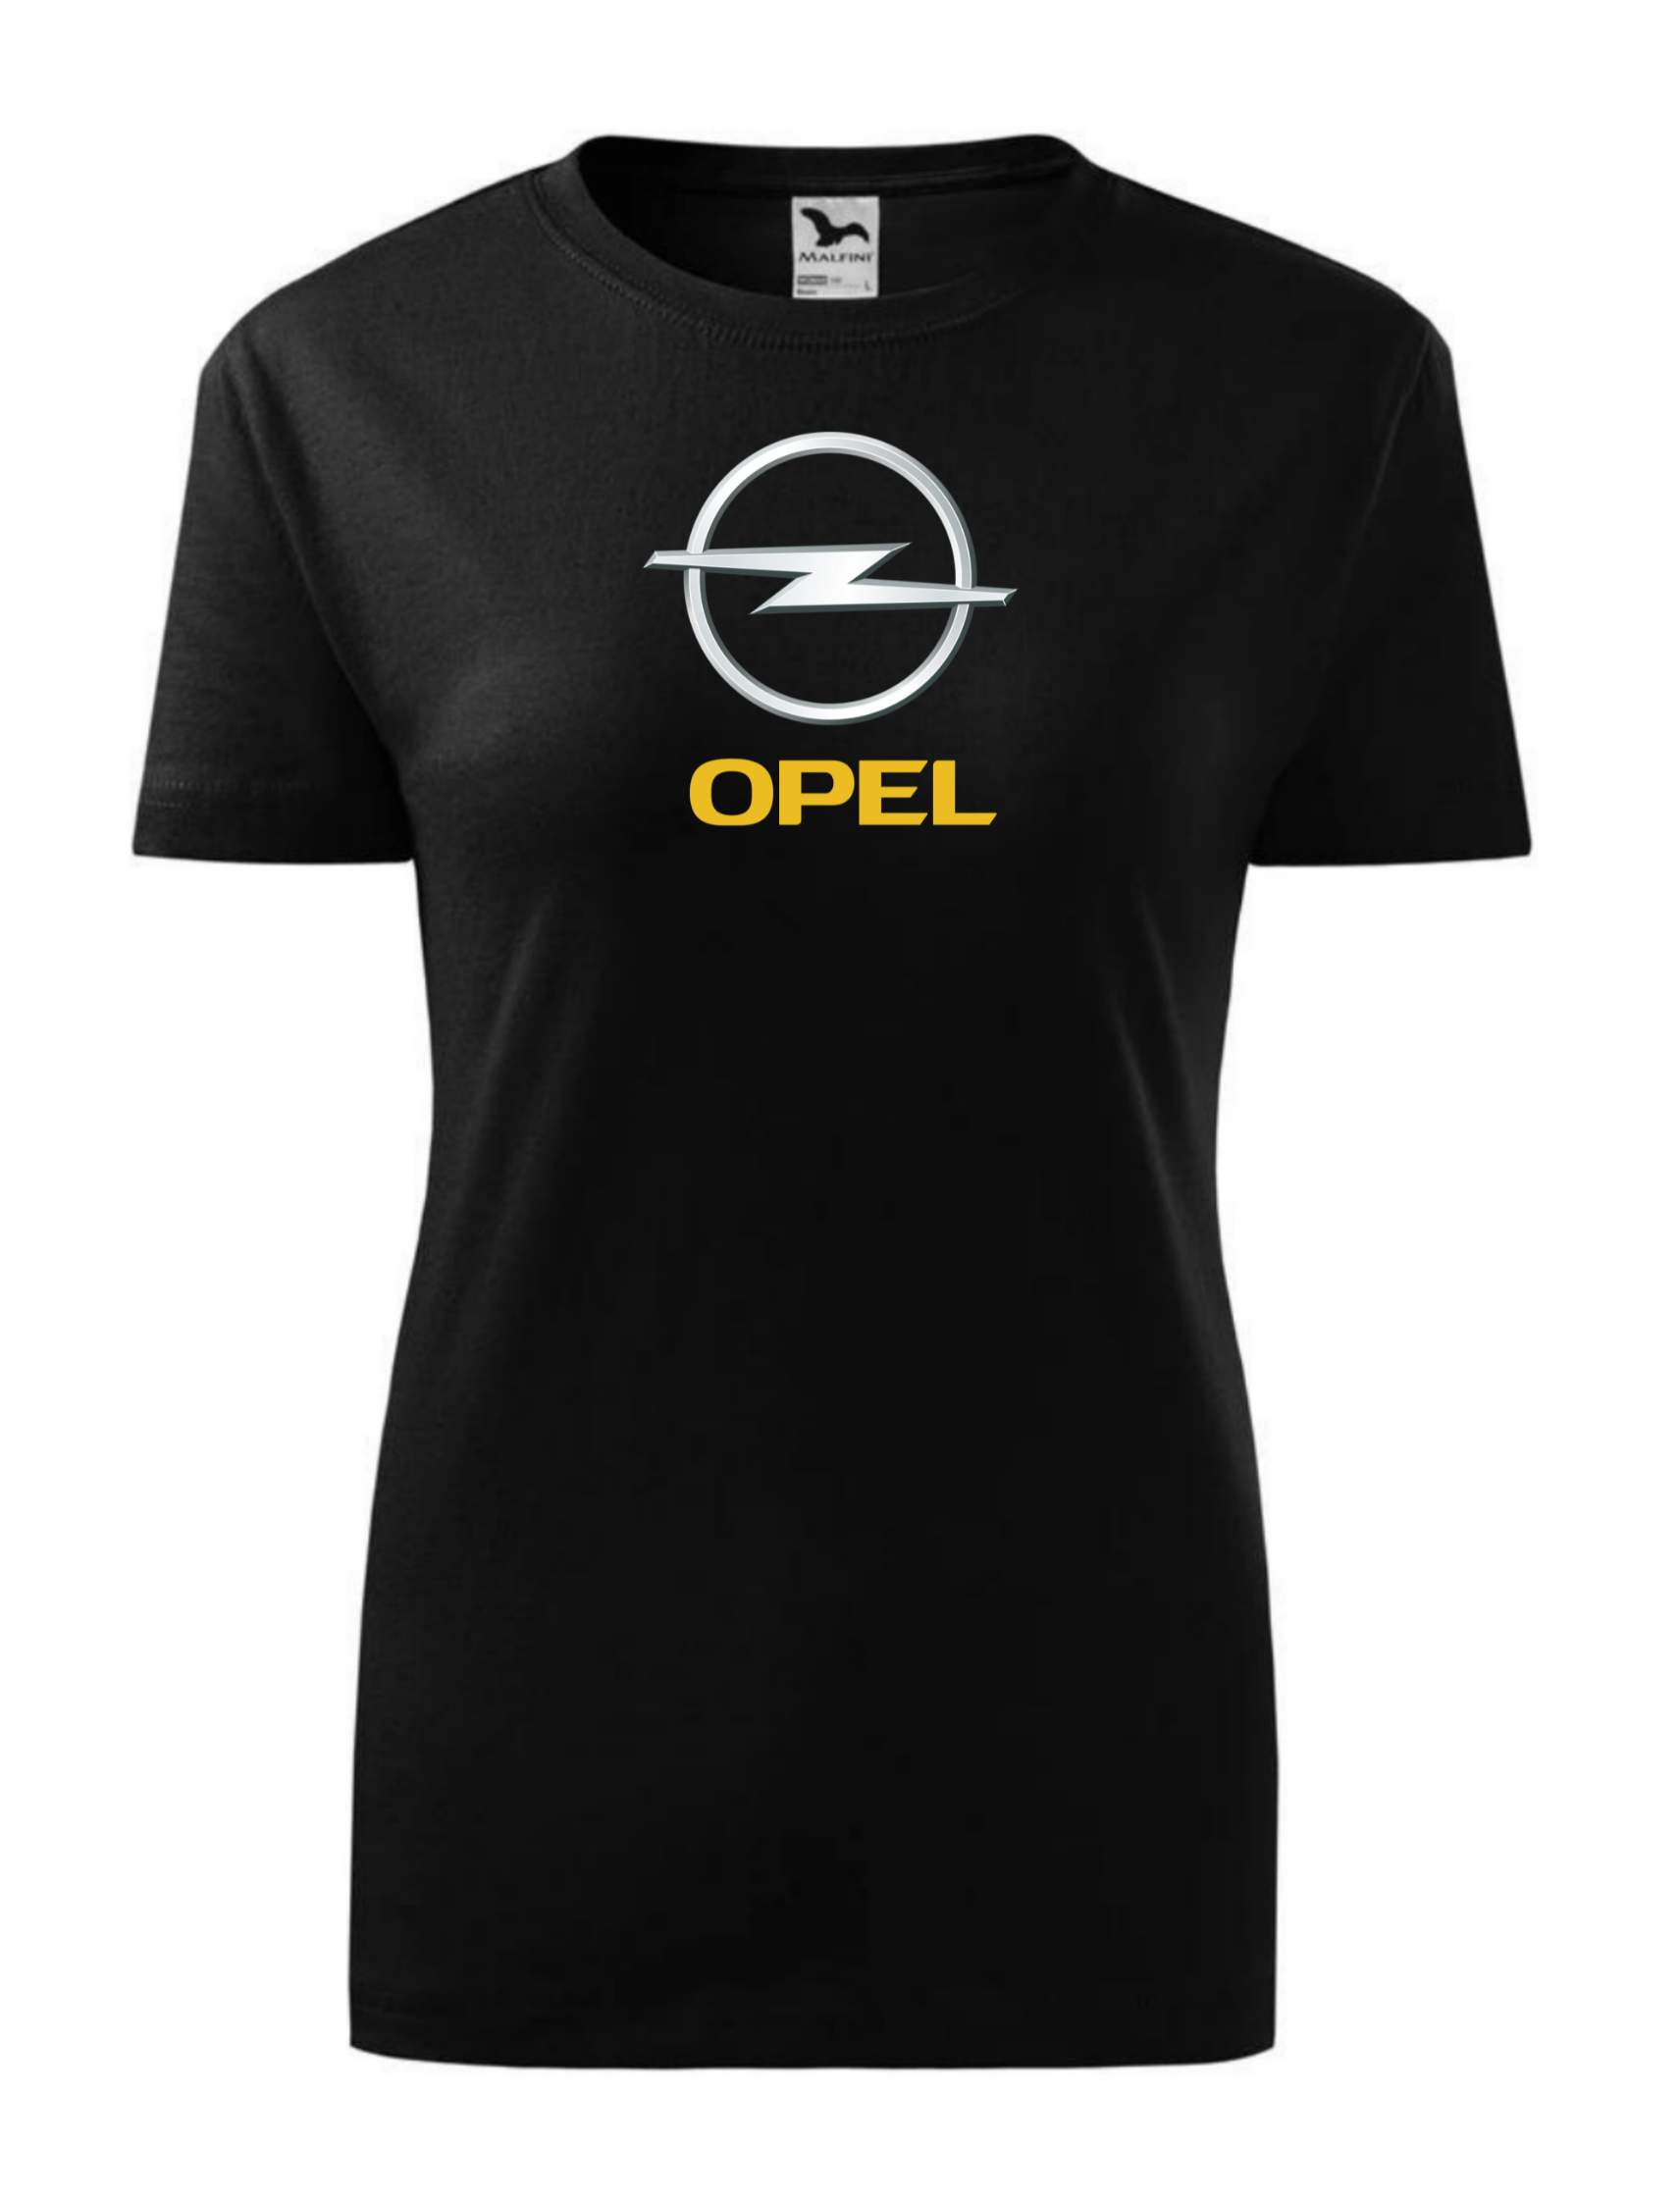 Dámské tričko s potiskem značky Opel